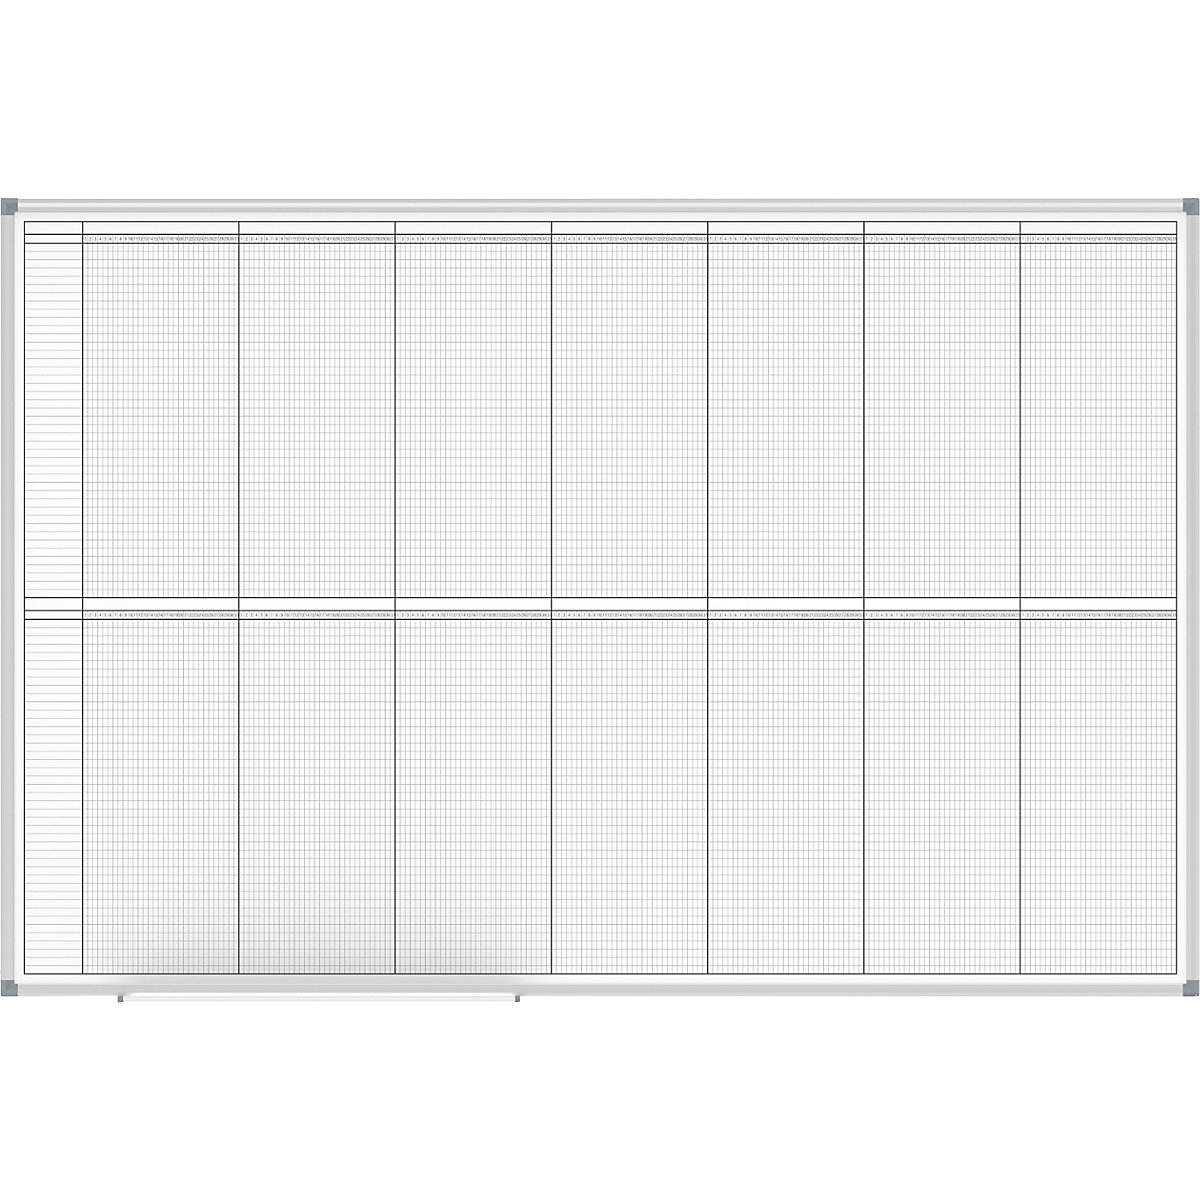 Plánovací tabule – MAUL, roční plánovač, náhled 2 x 6 měsíců, šířka 1500 mm-3